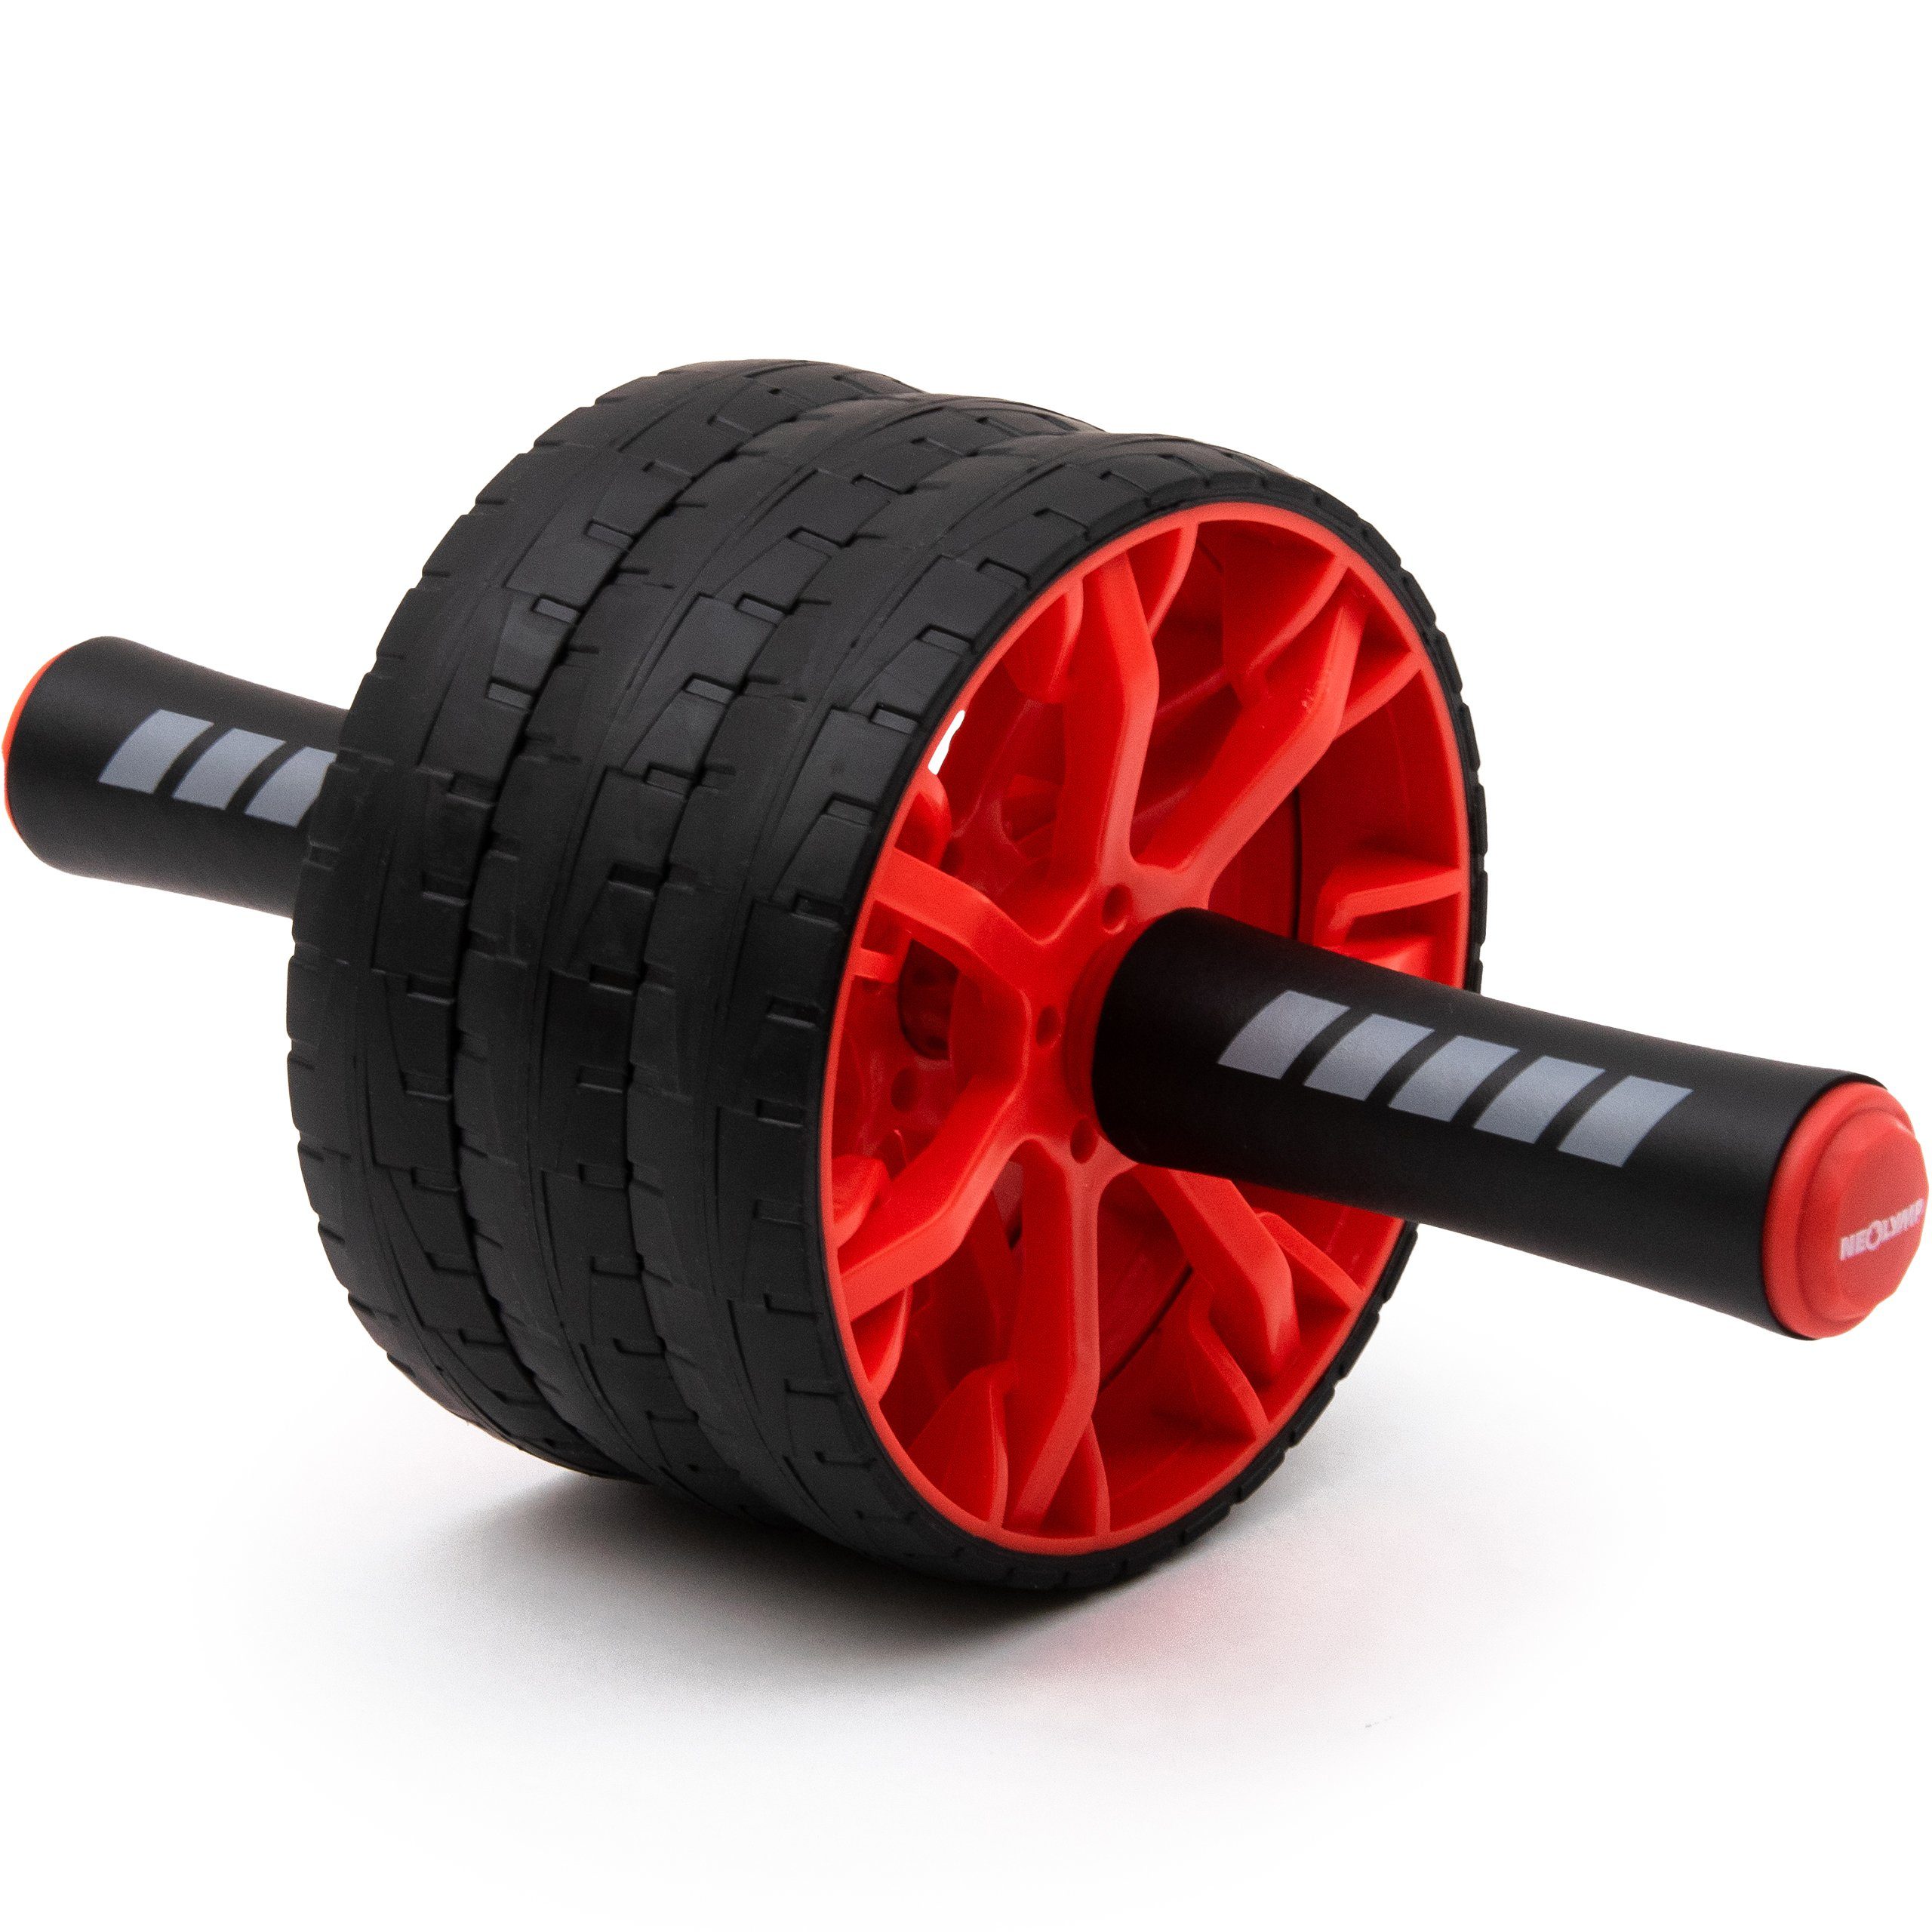 NEOLYMP Bauchmuskelmaschine Premium Bauchroller, gezieltes Training der Bauchmuskeln (Set, Bauchroller, Unterlage für die Knie), kompakt, rutschfest und stabil, gepolsterte Griffe schwarz-rot